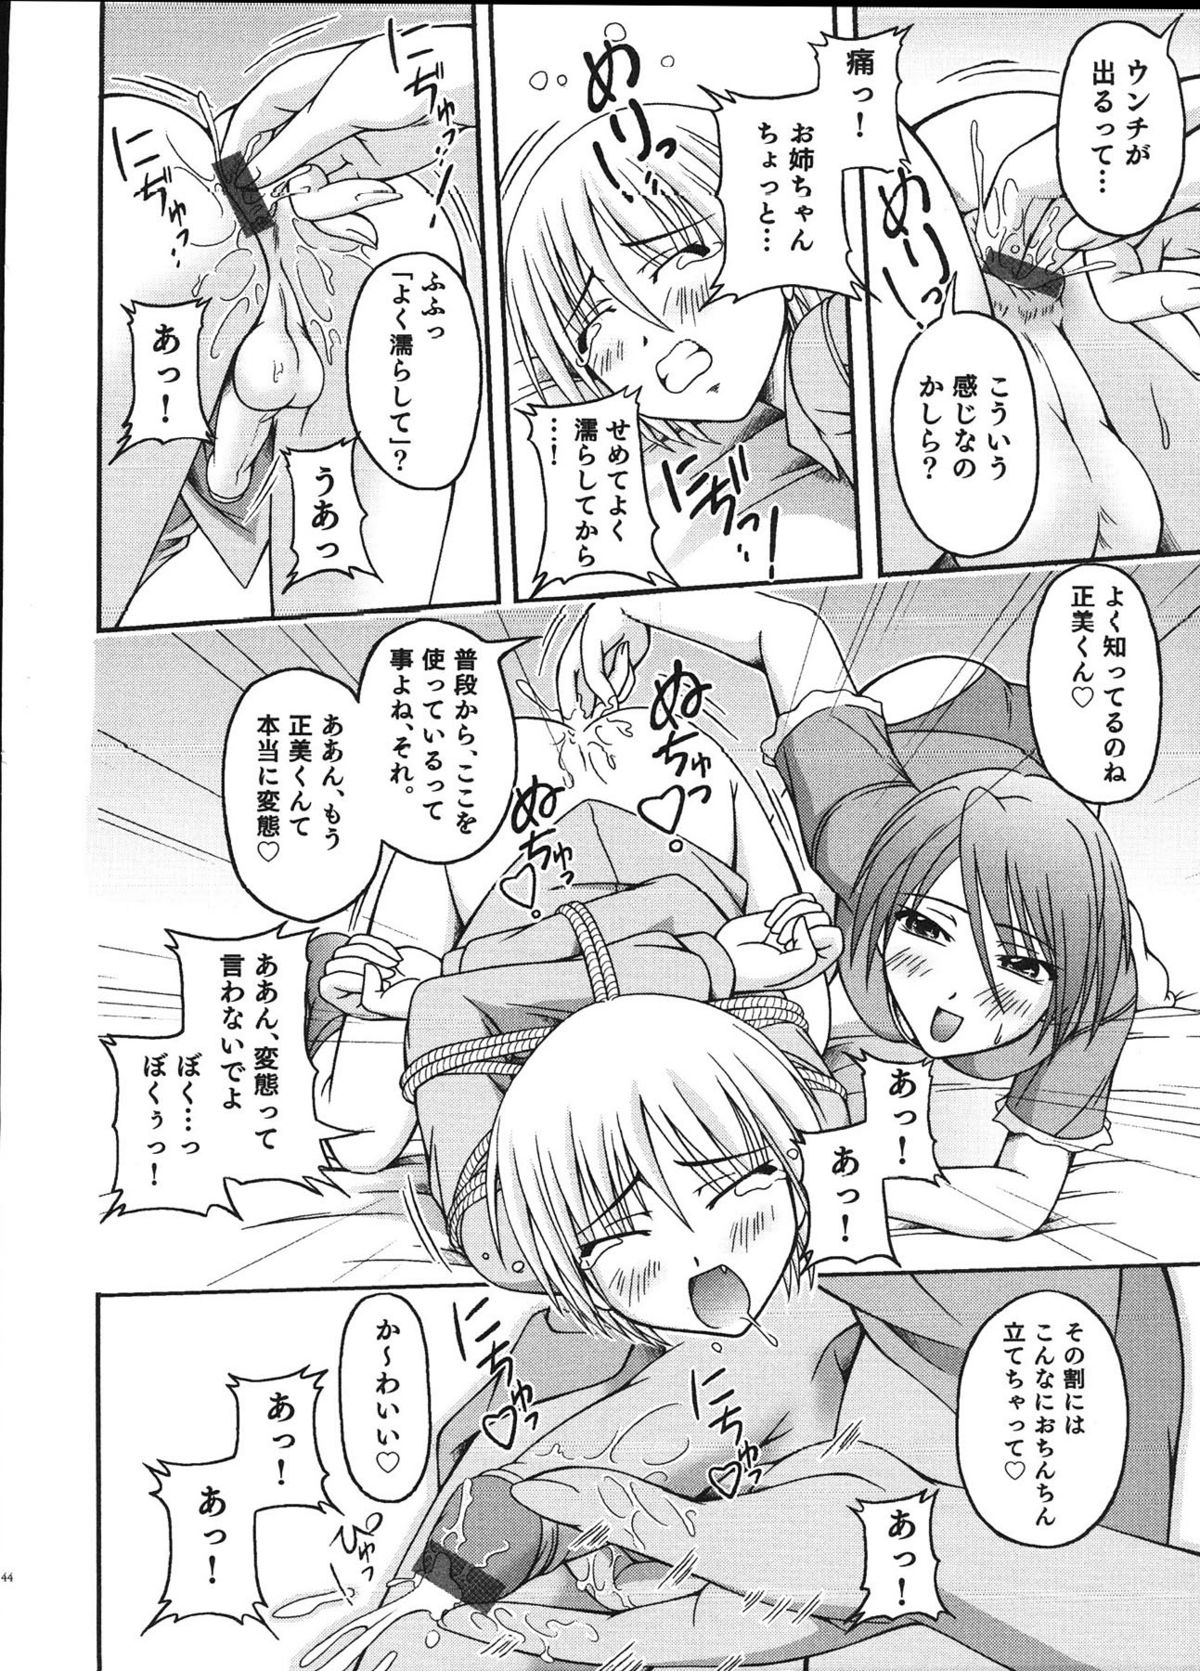 [Anthology] Ero Shota 12 - Sweet Maple Boys page 43 full